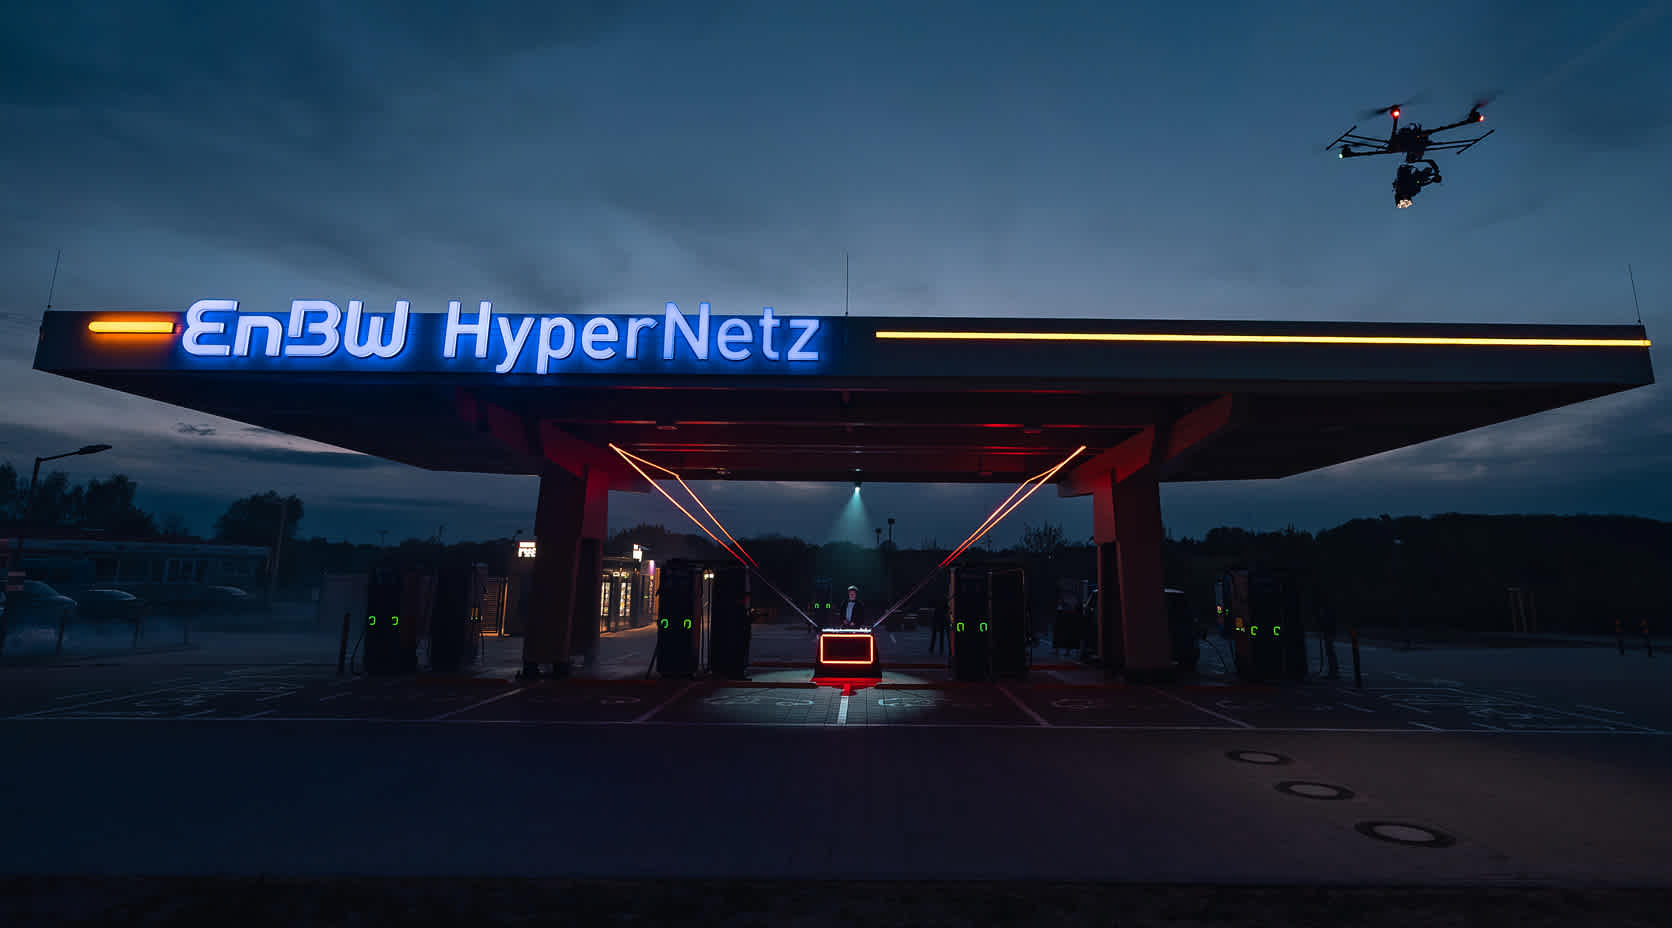 Beleuchteter EnBW HyperNetz nachhaltiger Ladepark im Dunkeln.